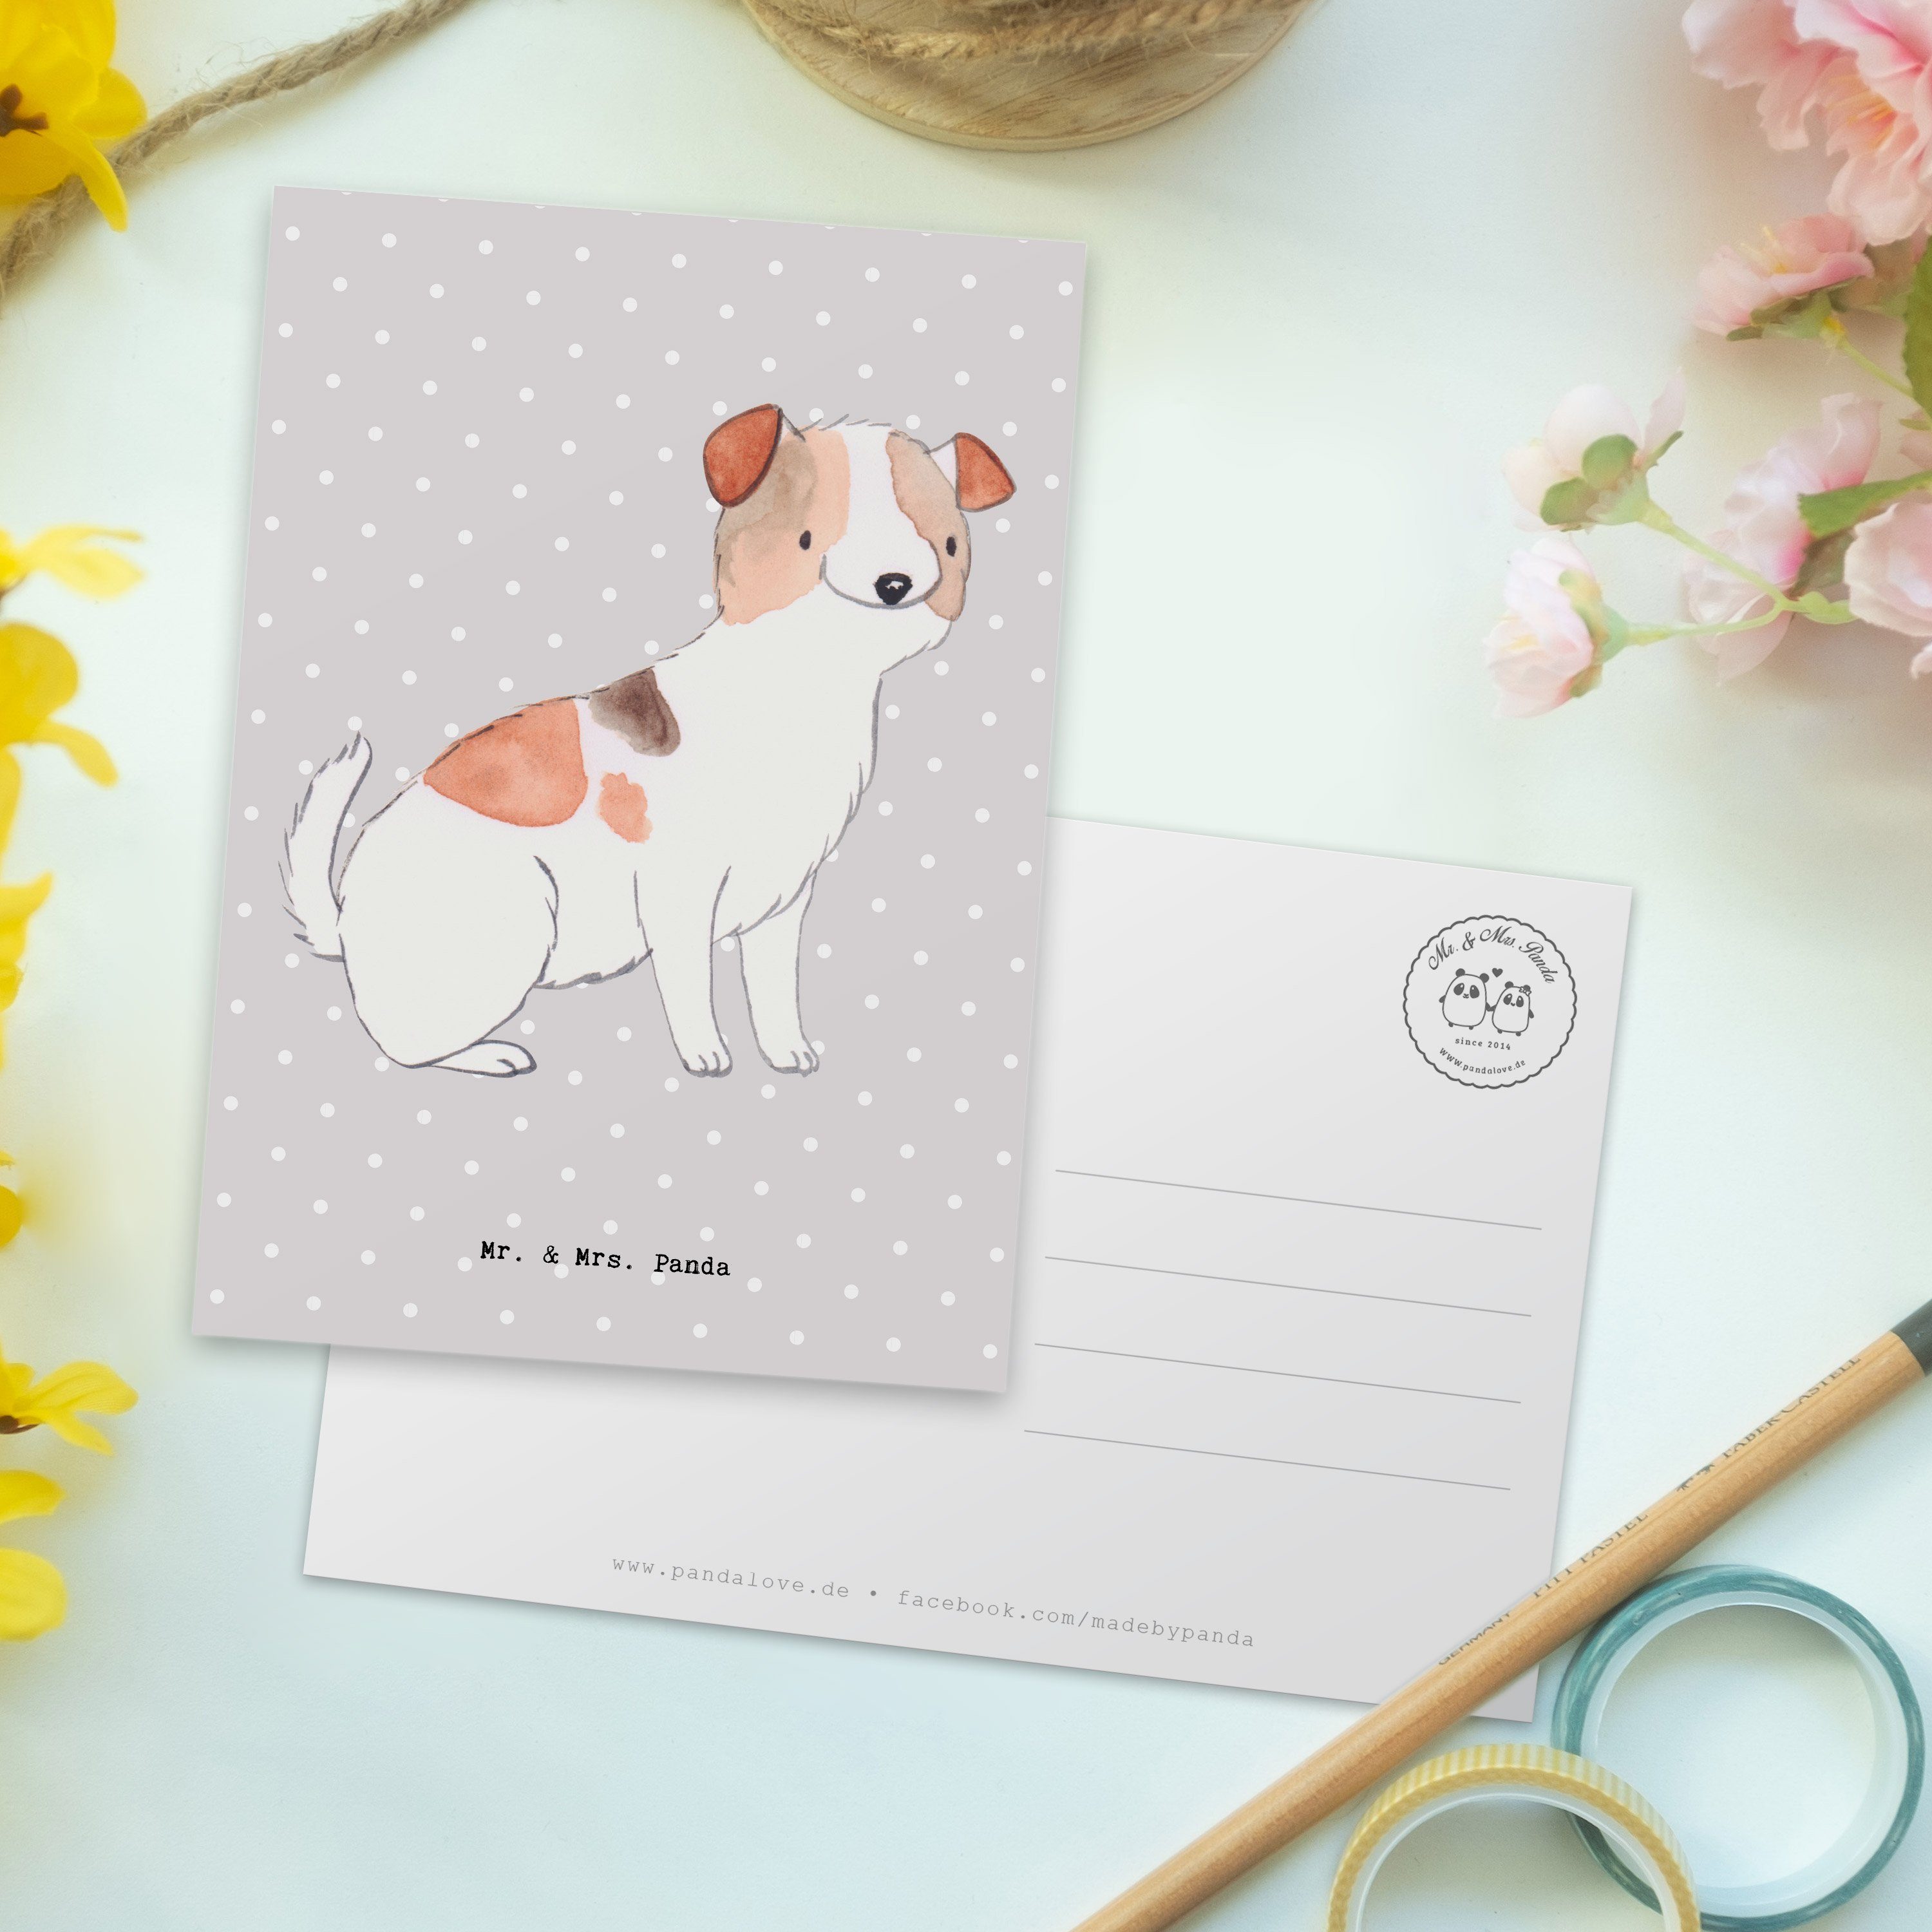 Mr. & Mrs. Panda Postkarte - Moment Terrier Einladung, Ges Geschenk, Jack Russell Pastell - Grau